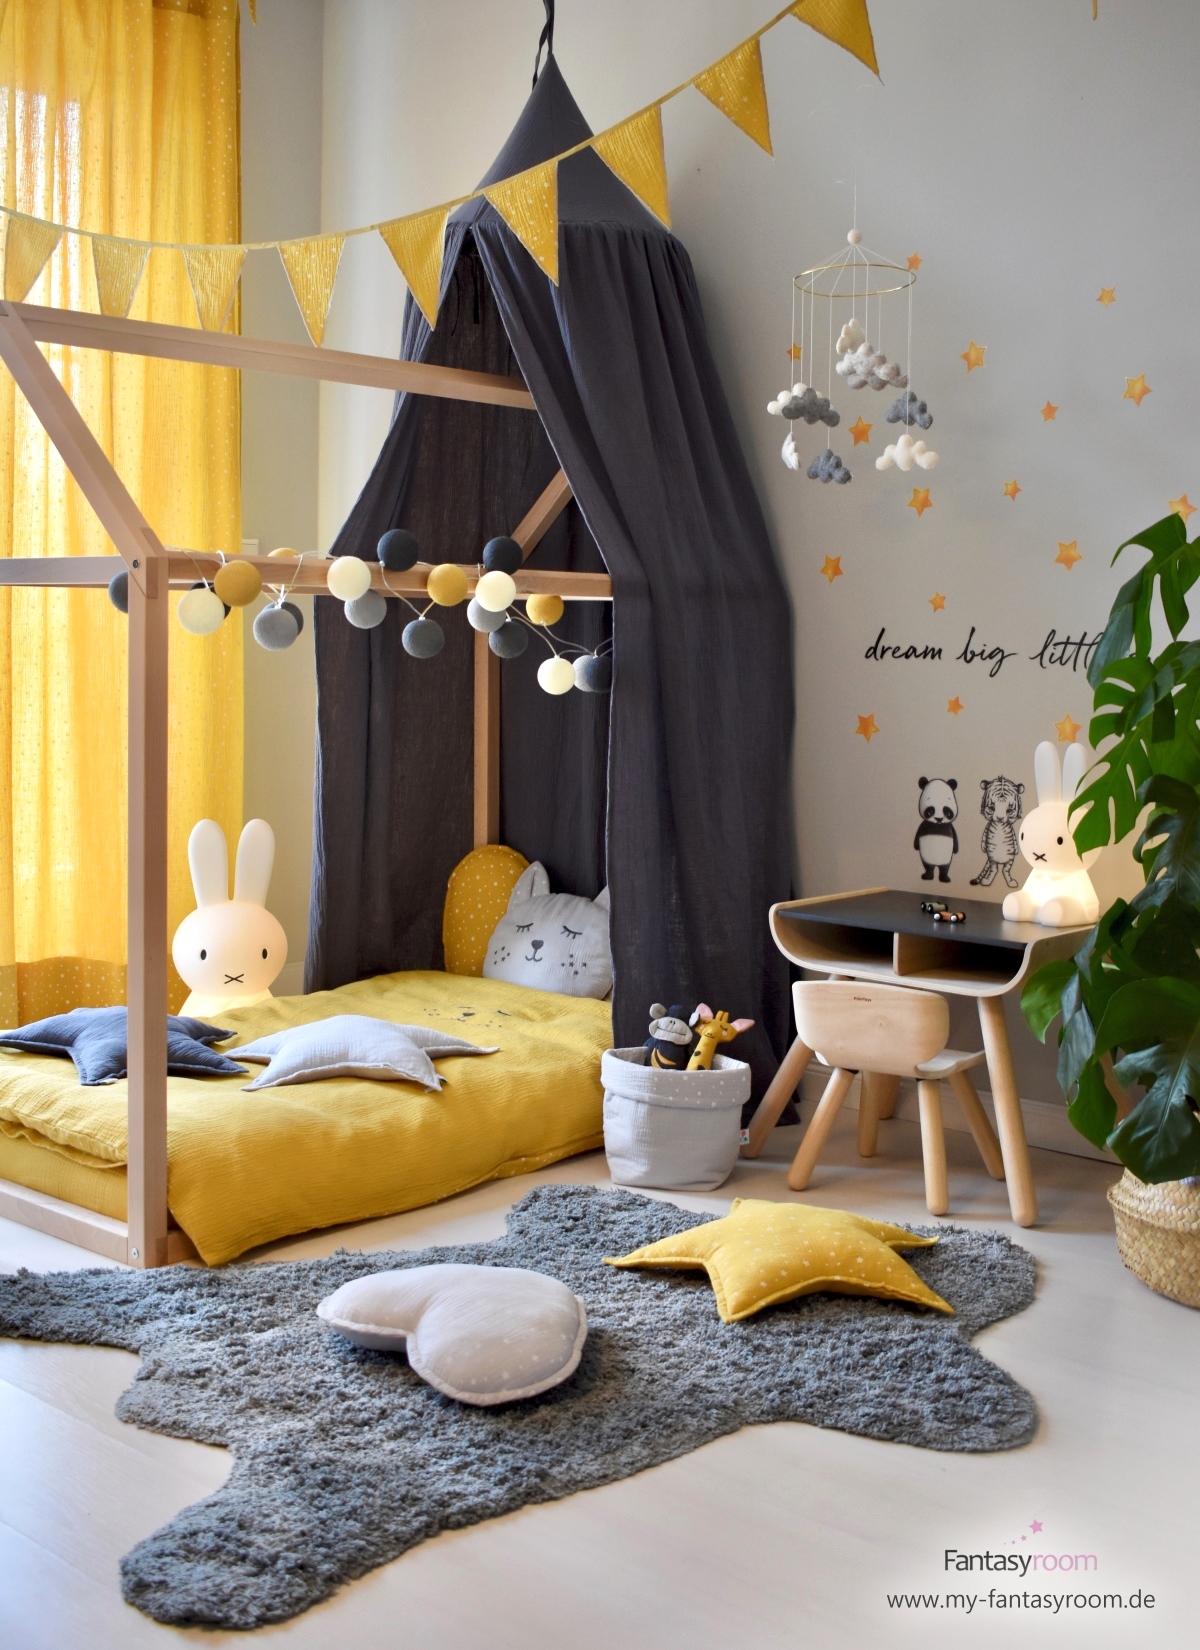 Hausbett im stylischen Kinderzimmer in Senfgelb und Grau